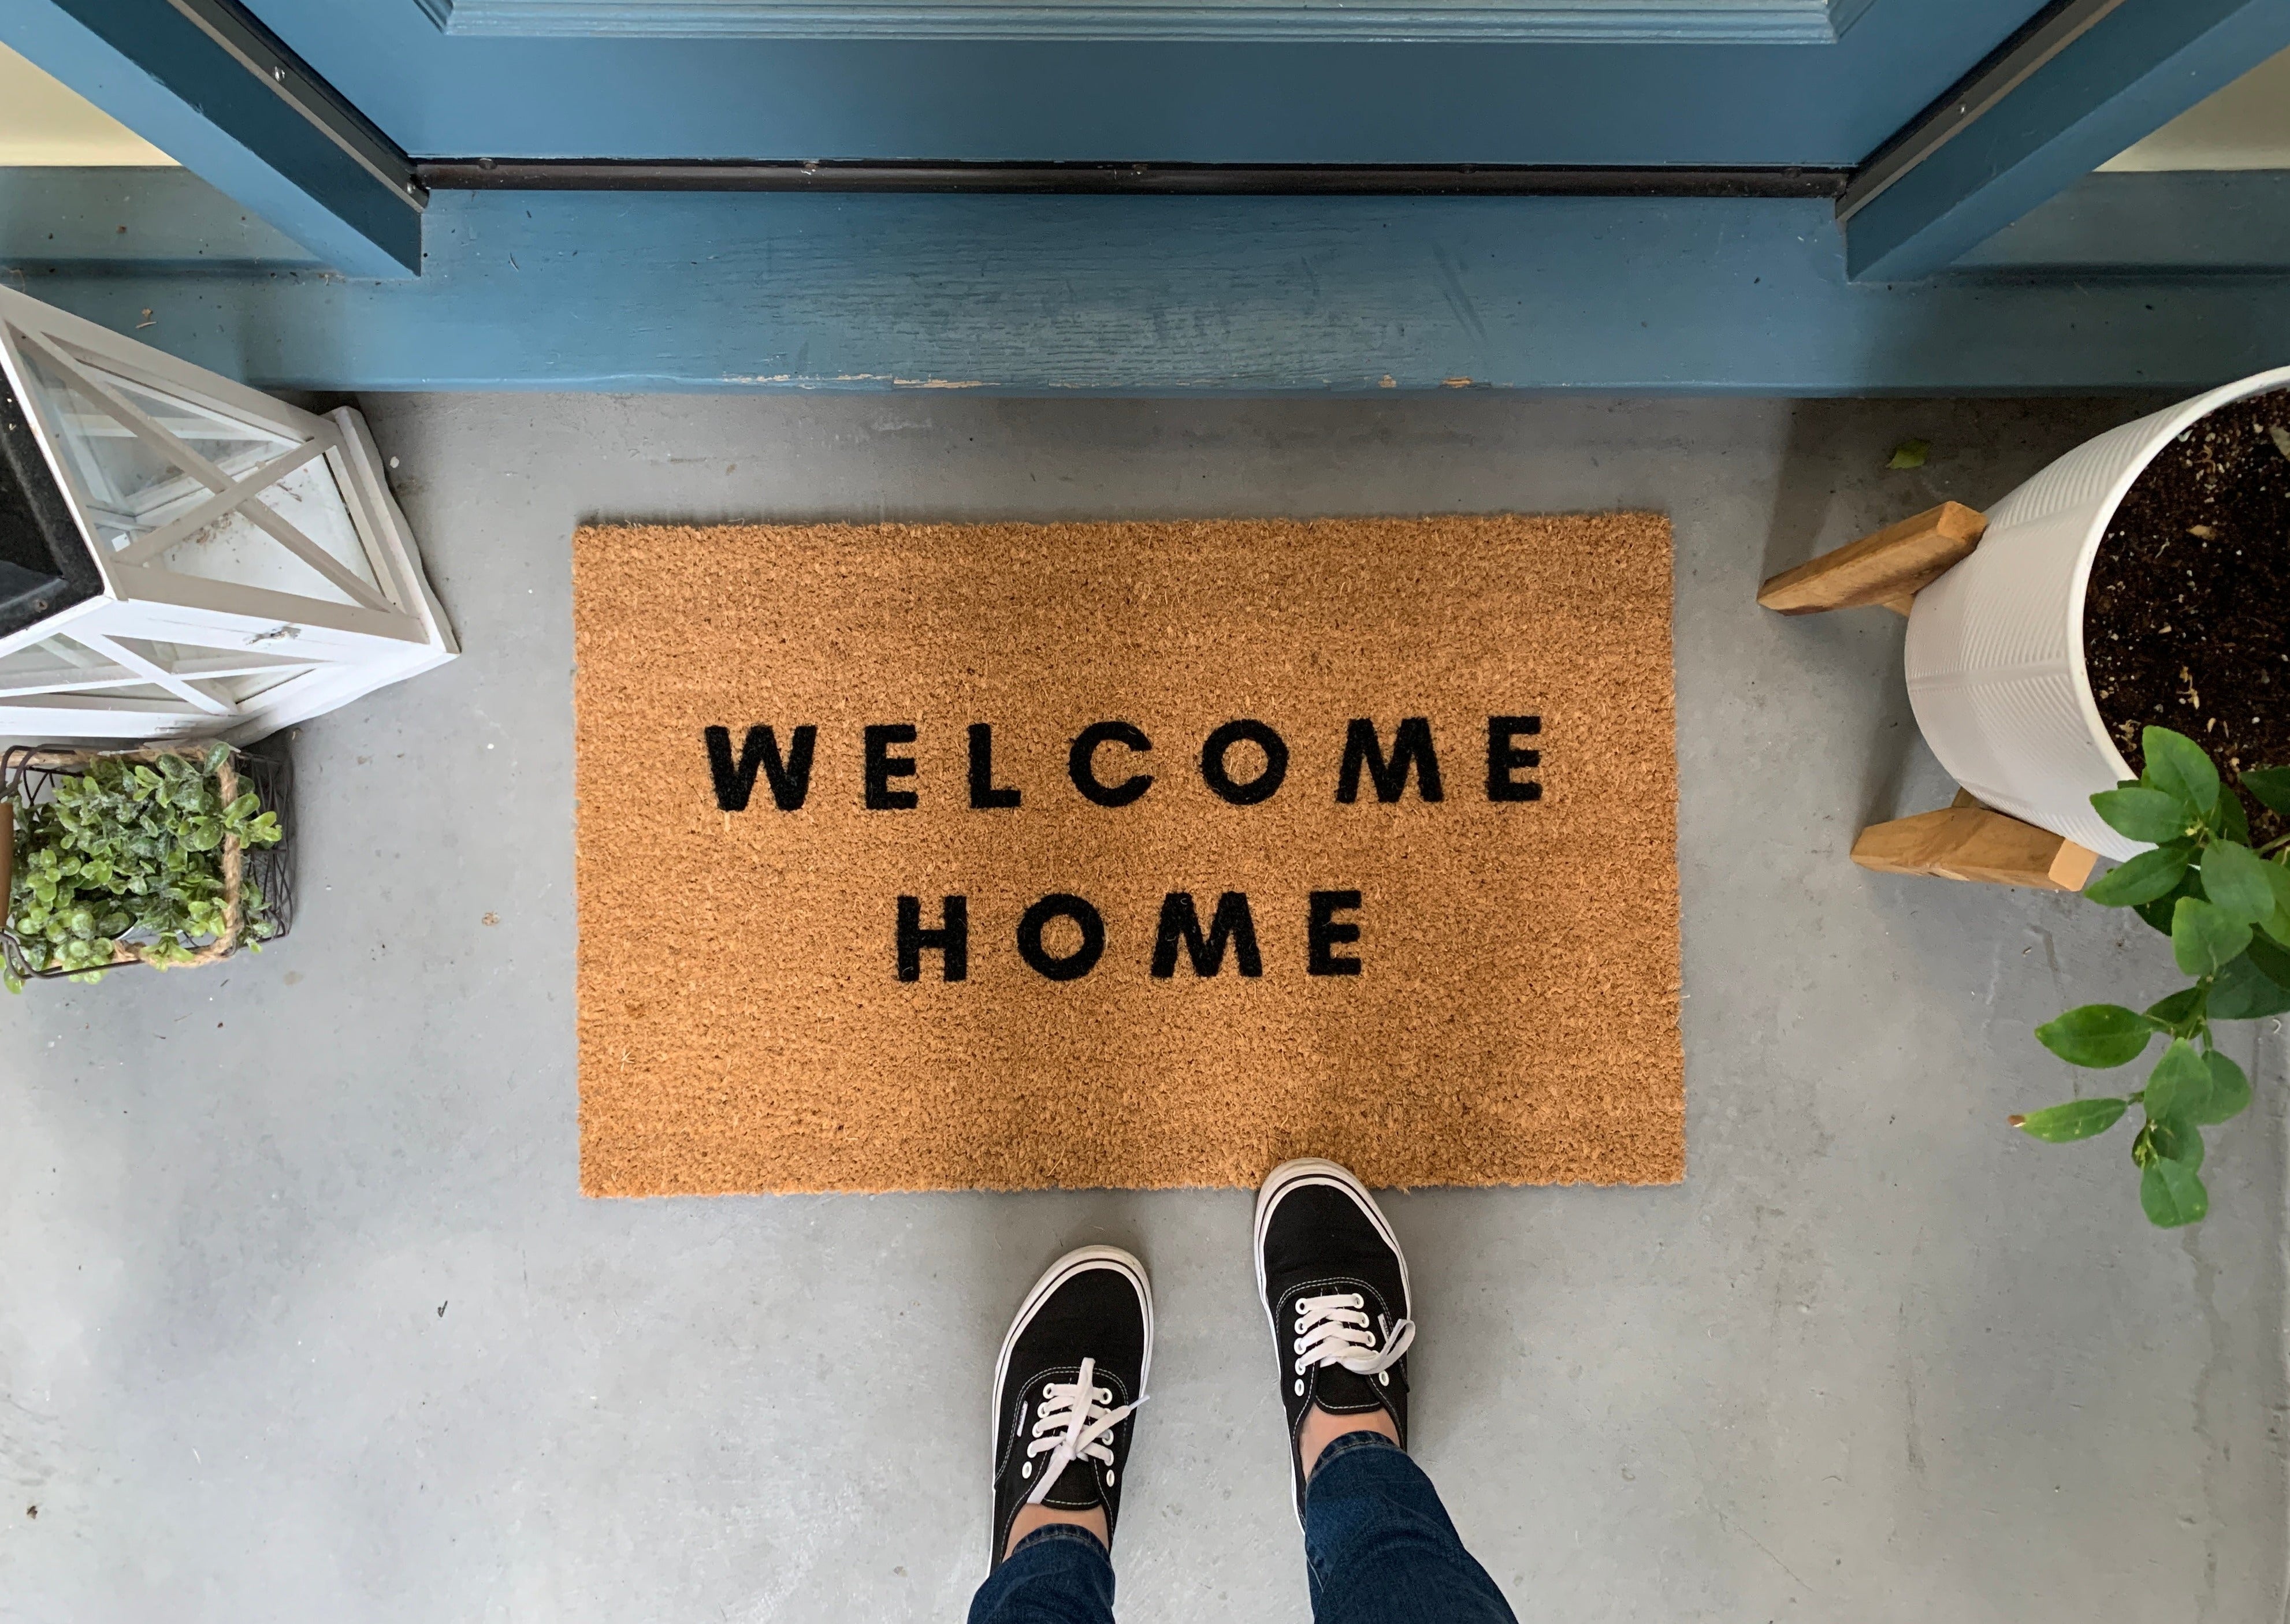 Mini Playhouse Doormat, Let's Play Welcome Mat, 24 Inch Small Doormat,  Kid's Doormat, Small Welcome Mat, Skinny Doormat Outdoor 